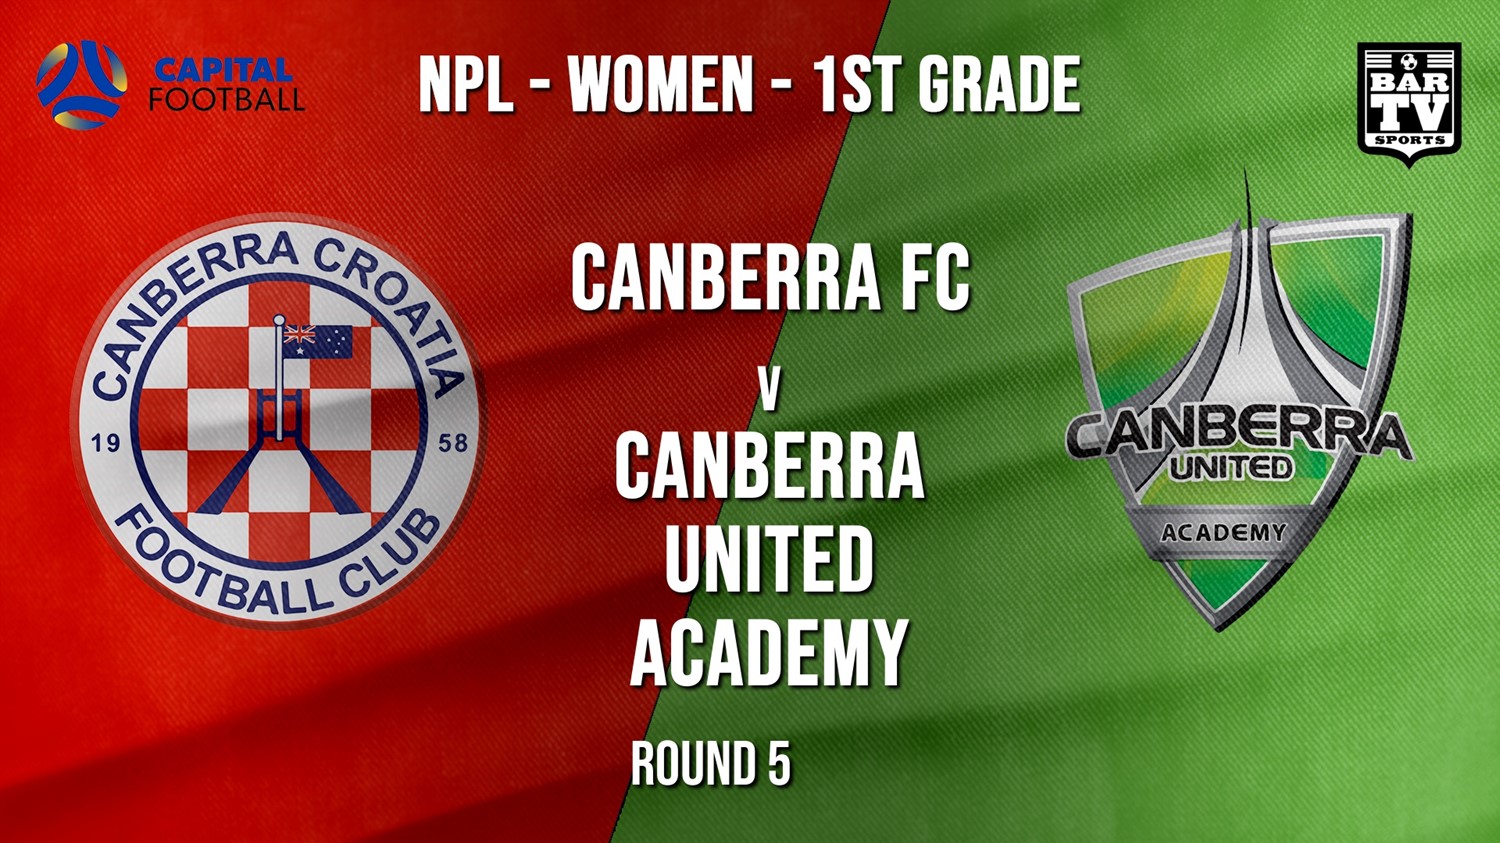 NPLW - Capital Round 5 - Canberra FC (women) v Canberra United Academy Minigame Slate Image